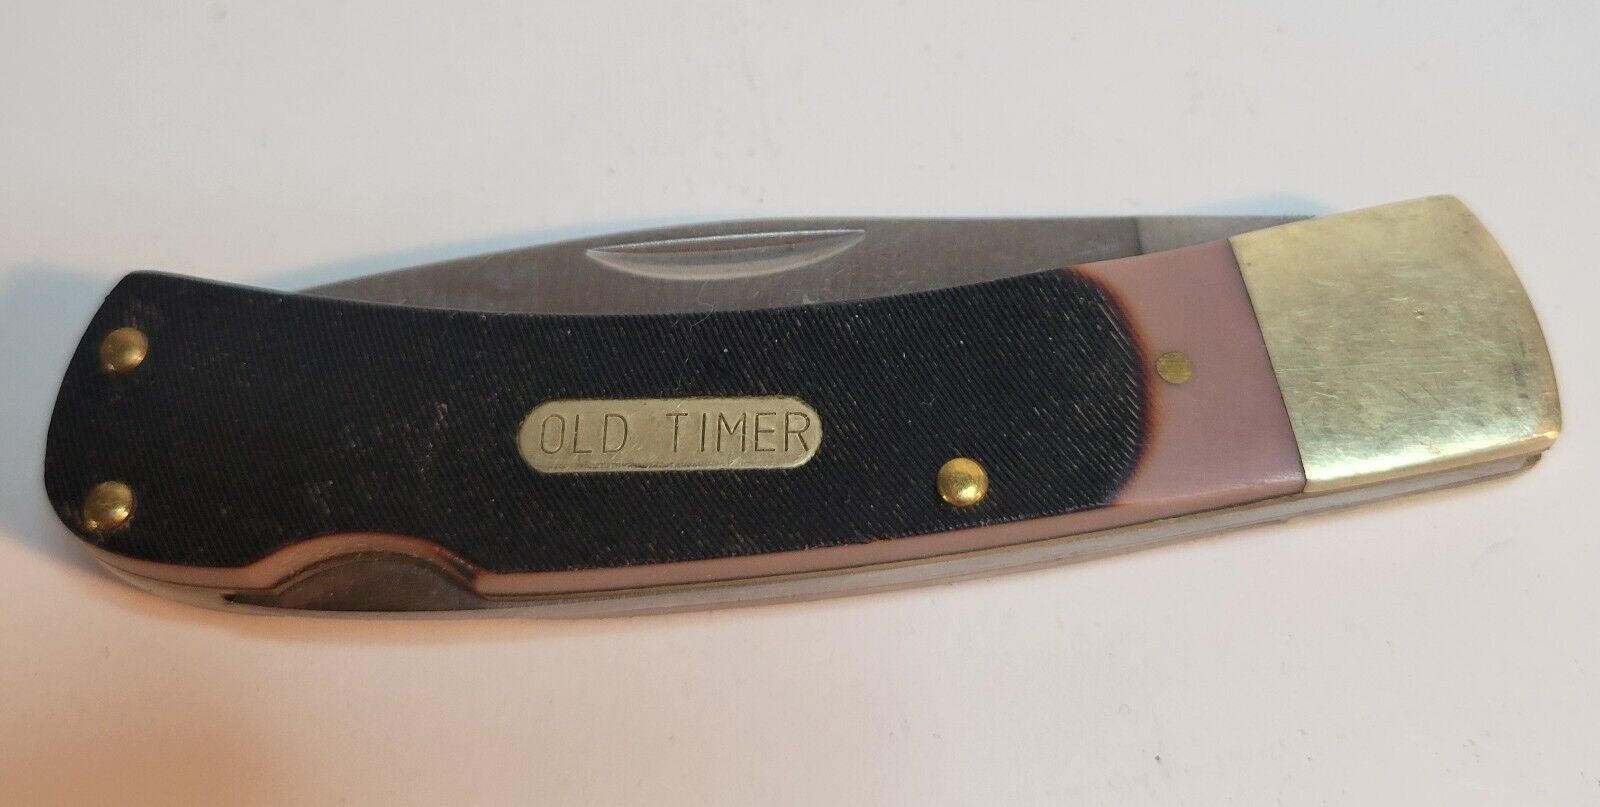 Schrade Pocket Knife Single Blade "Old Timer" - $25.00